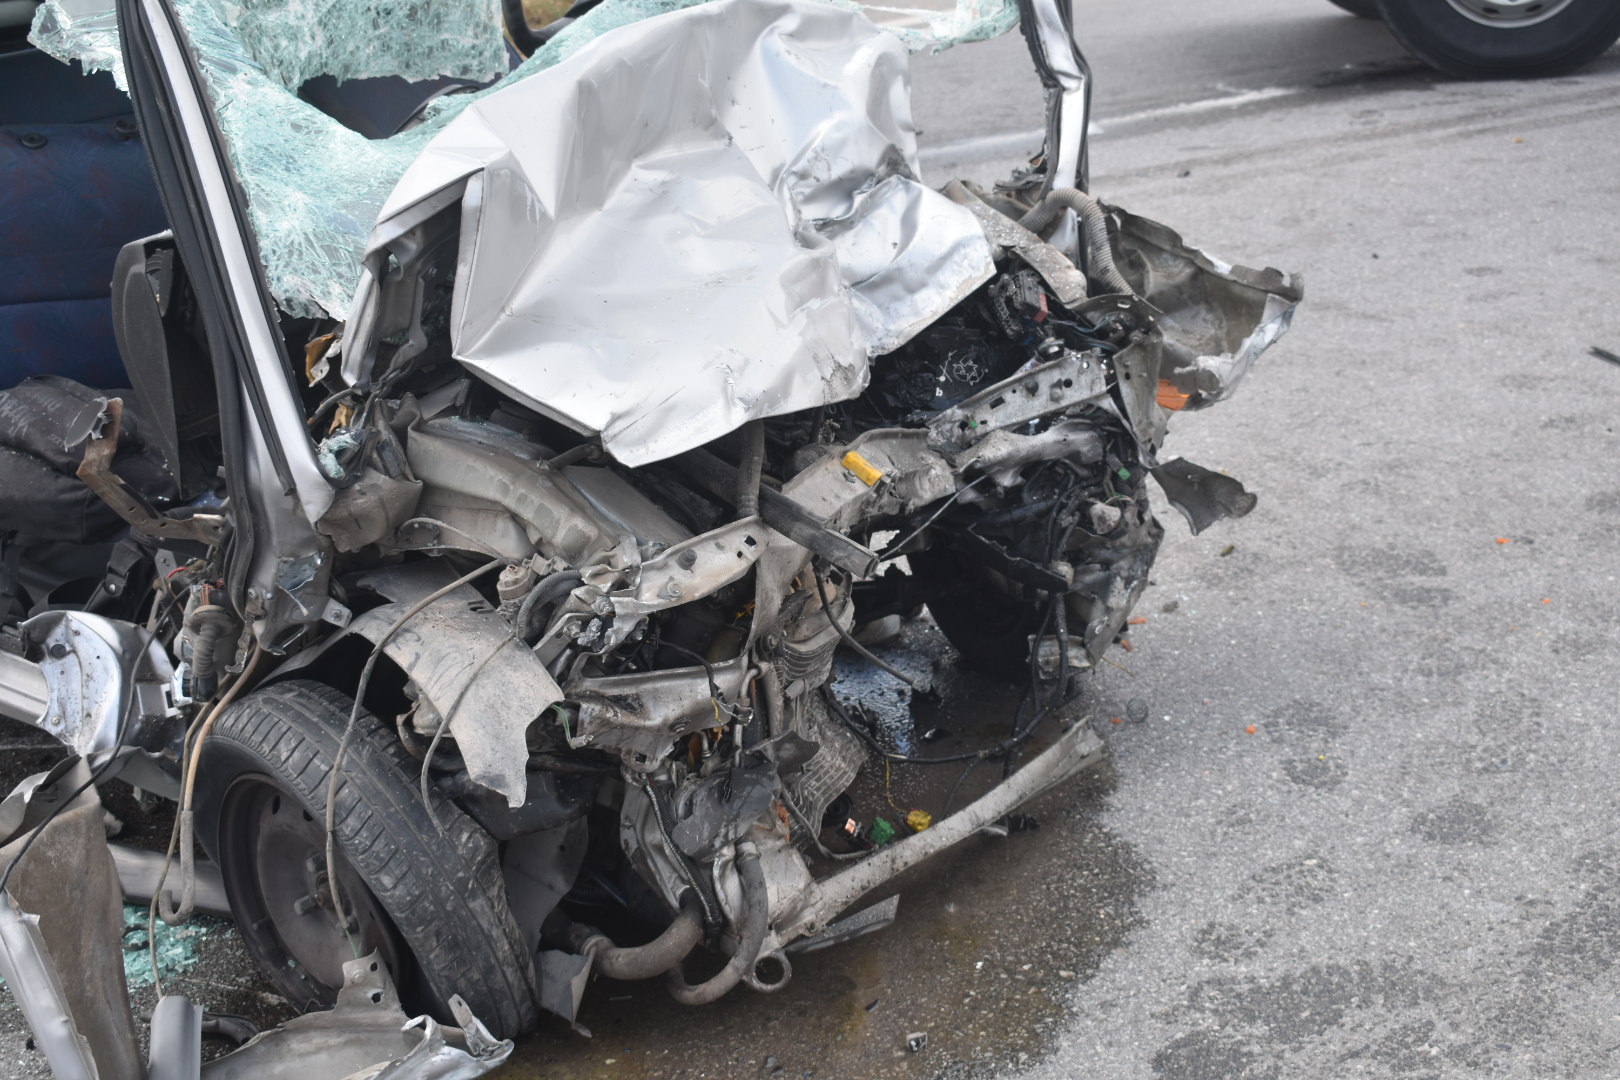 Λάρισα: Θανατηφόρο τροχαίο στον κόμβο Πλατυκάμπου - Σκοτώθηκε νεαρός οδηγός (Δείτε φωτογραφίες)